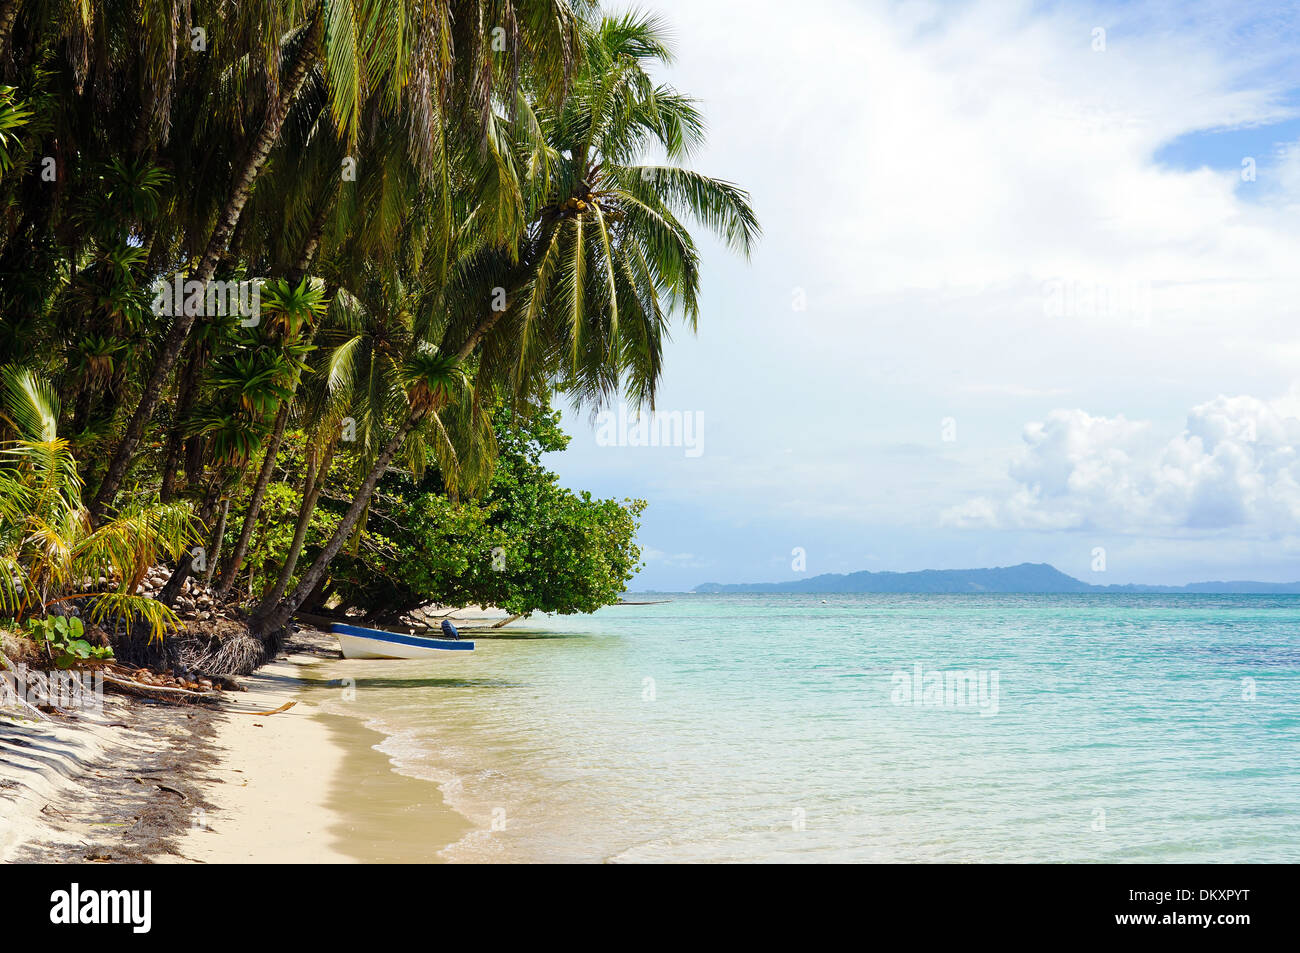 Tropical Beach Island avec leaning cocotier et un bateau, mer des Caraïbes, Panama, touches Zapatillas Banque D'Images